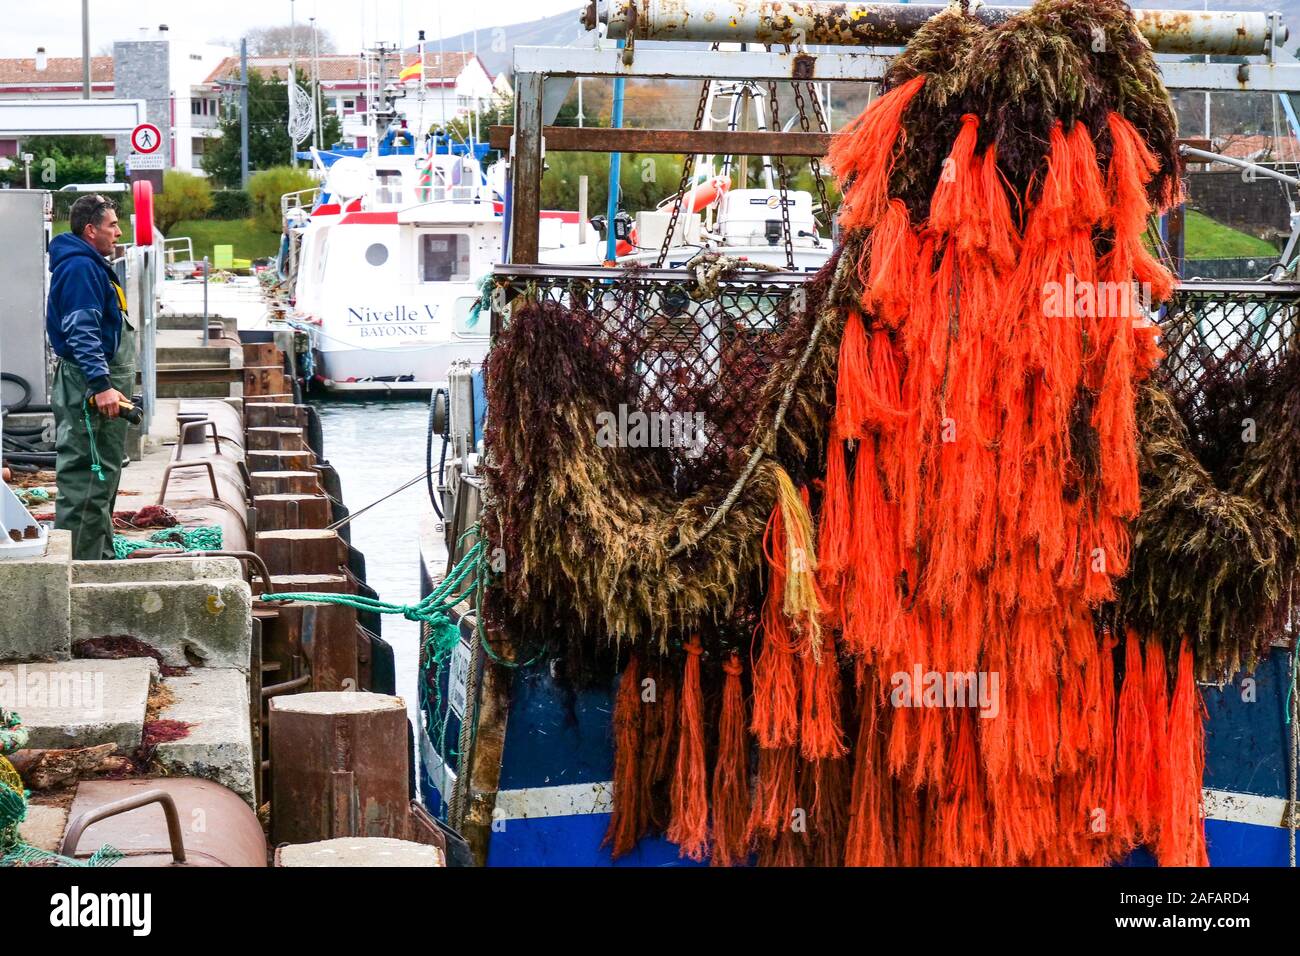 La descarga de algas rojas, puerto pesquero de Saint-Jean de Luz, Pirineos Atlánticos, Francia Foto de stock